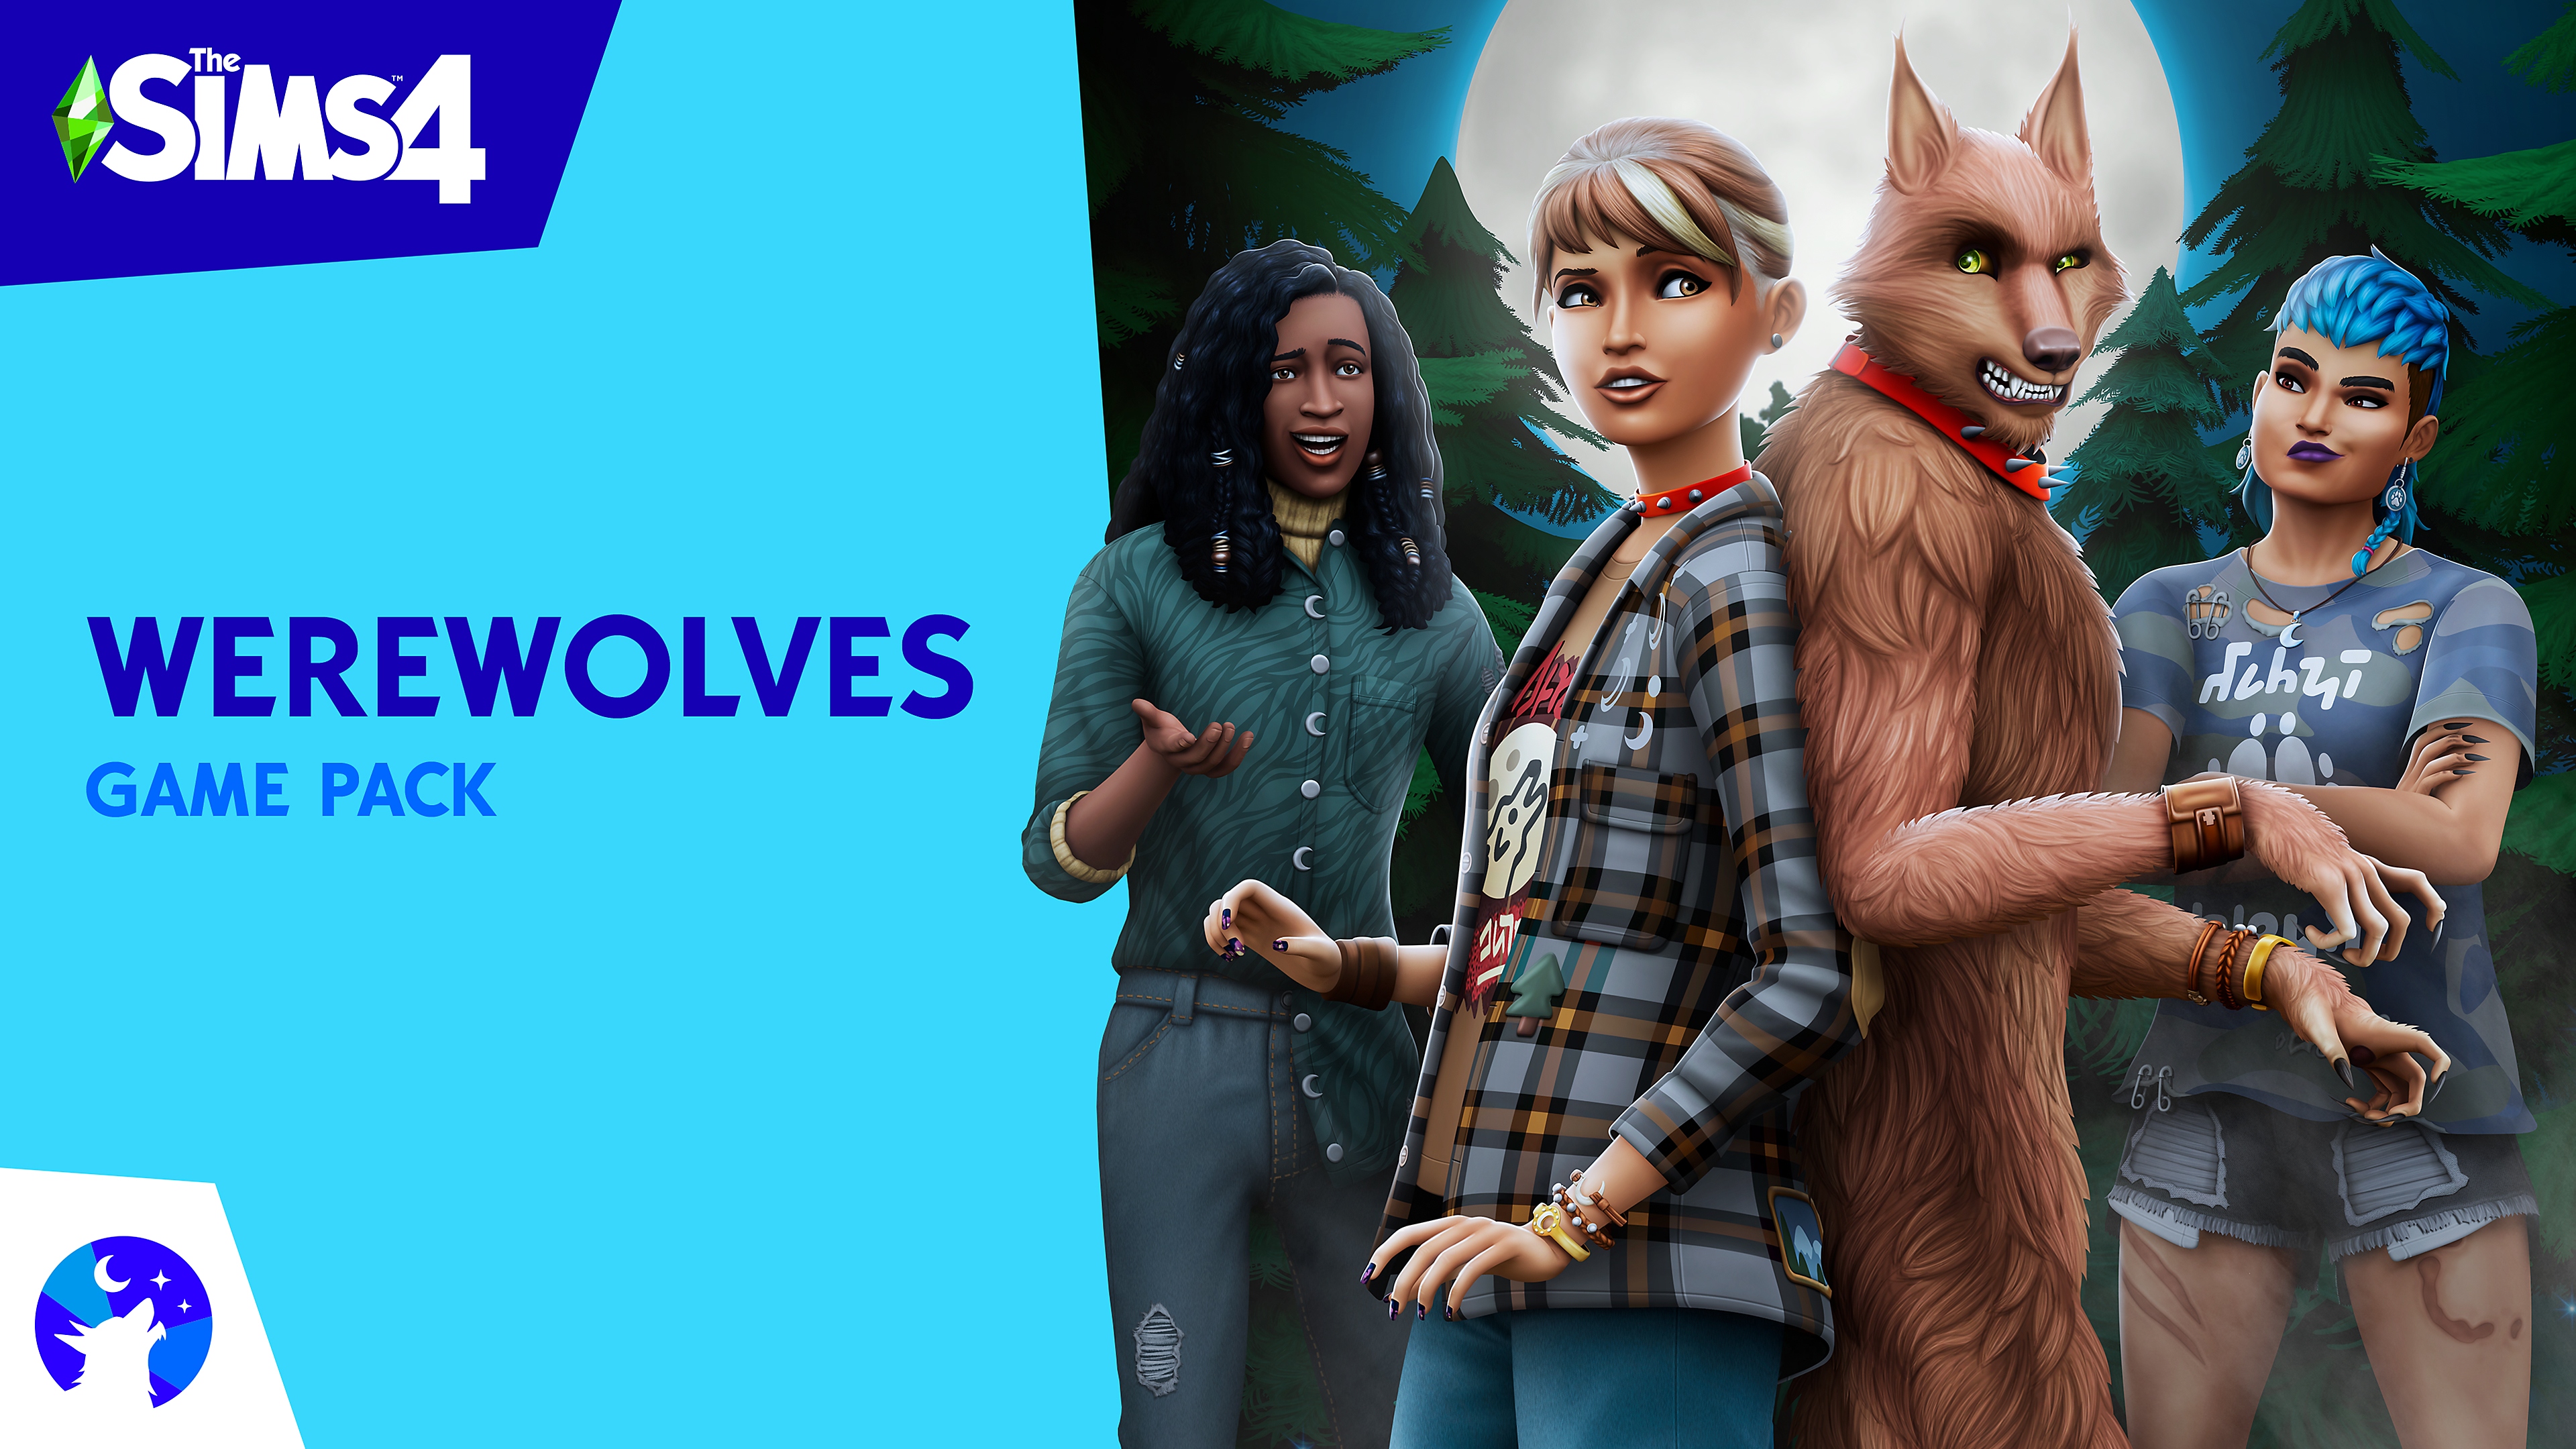 Πακέτο παιχνιδιού The Sims 4 Werewolves με βασικά γραφικά που περιλαμβάνουν χαρακτήρες Sims και έναν λυκάνθρωπο